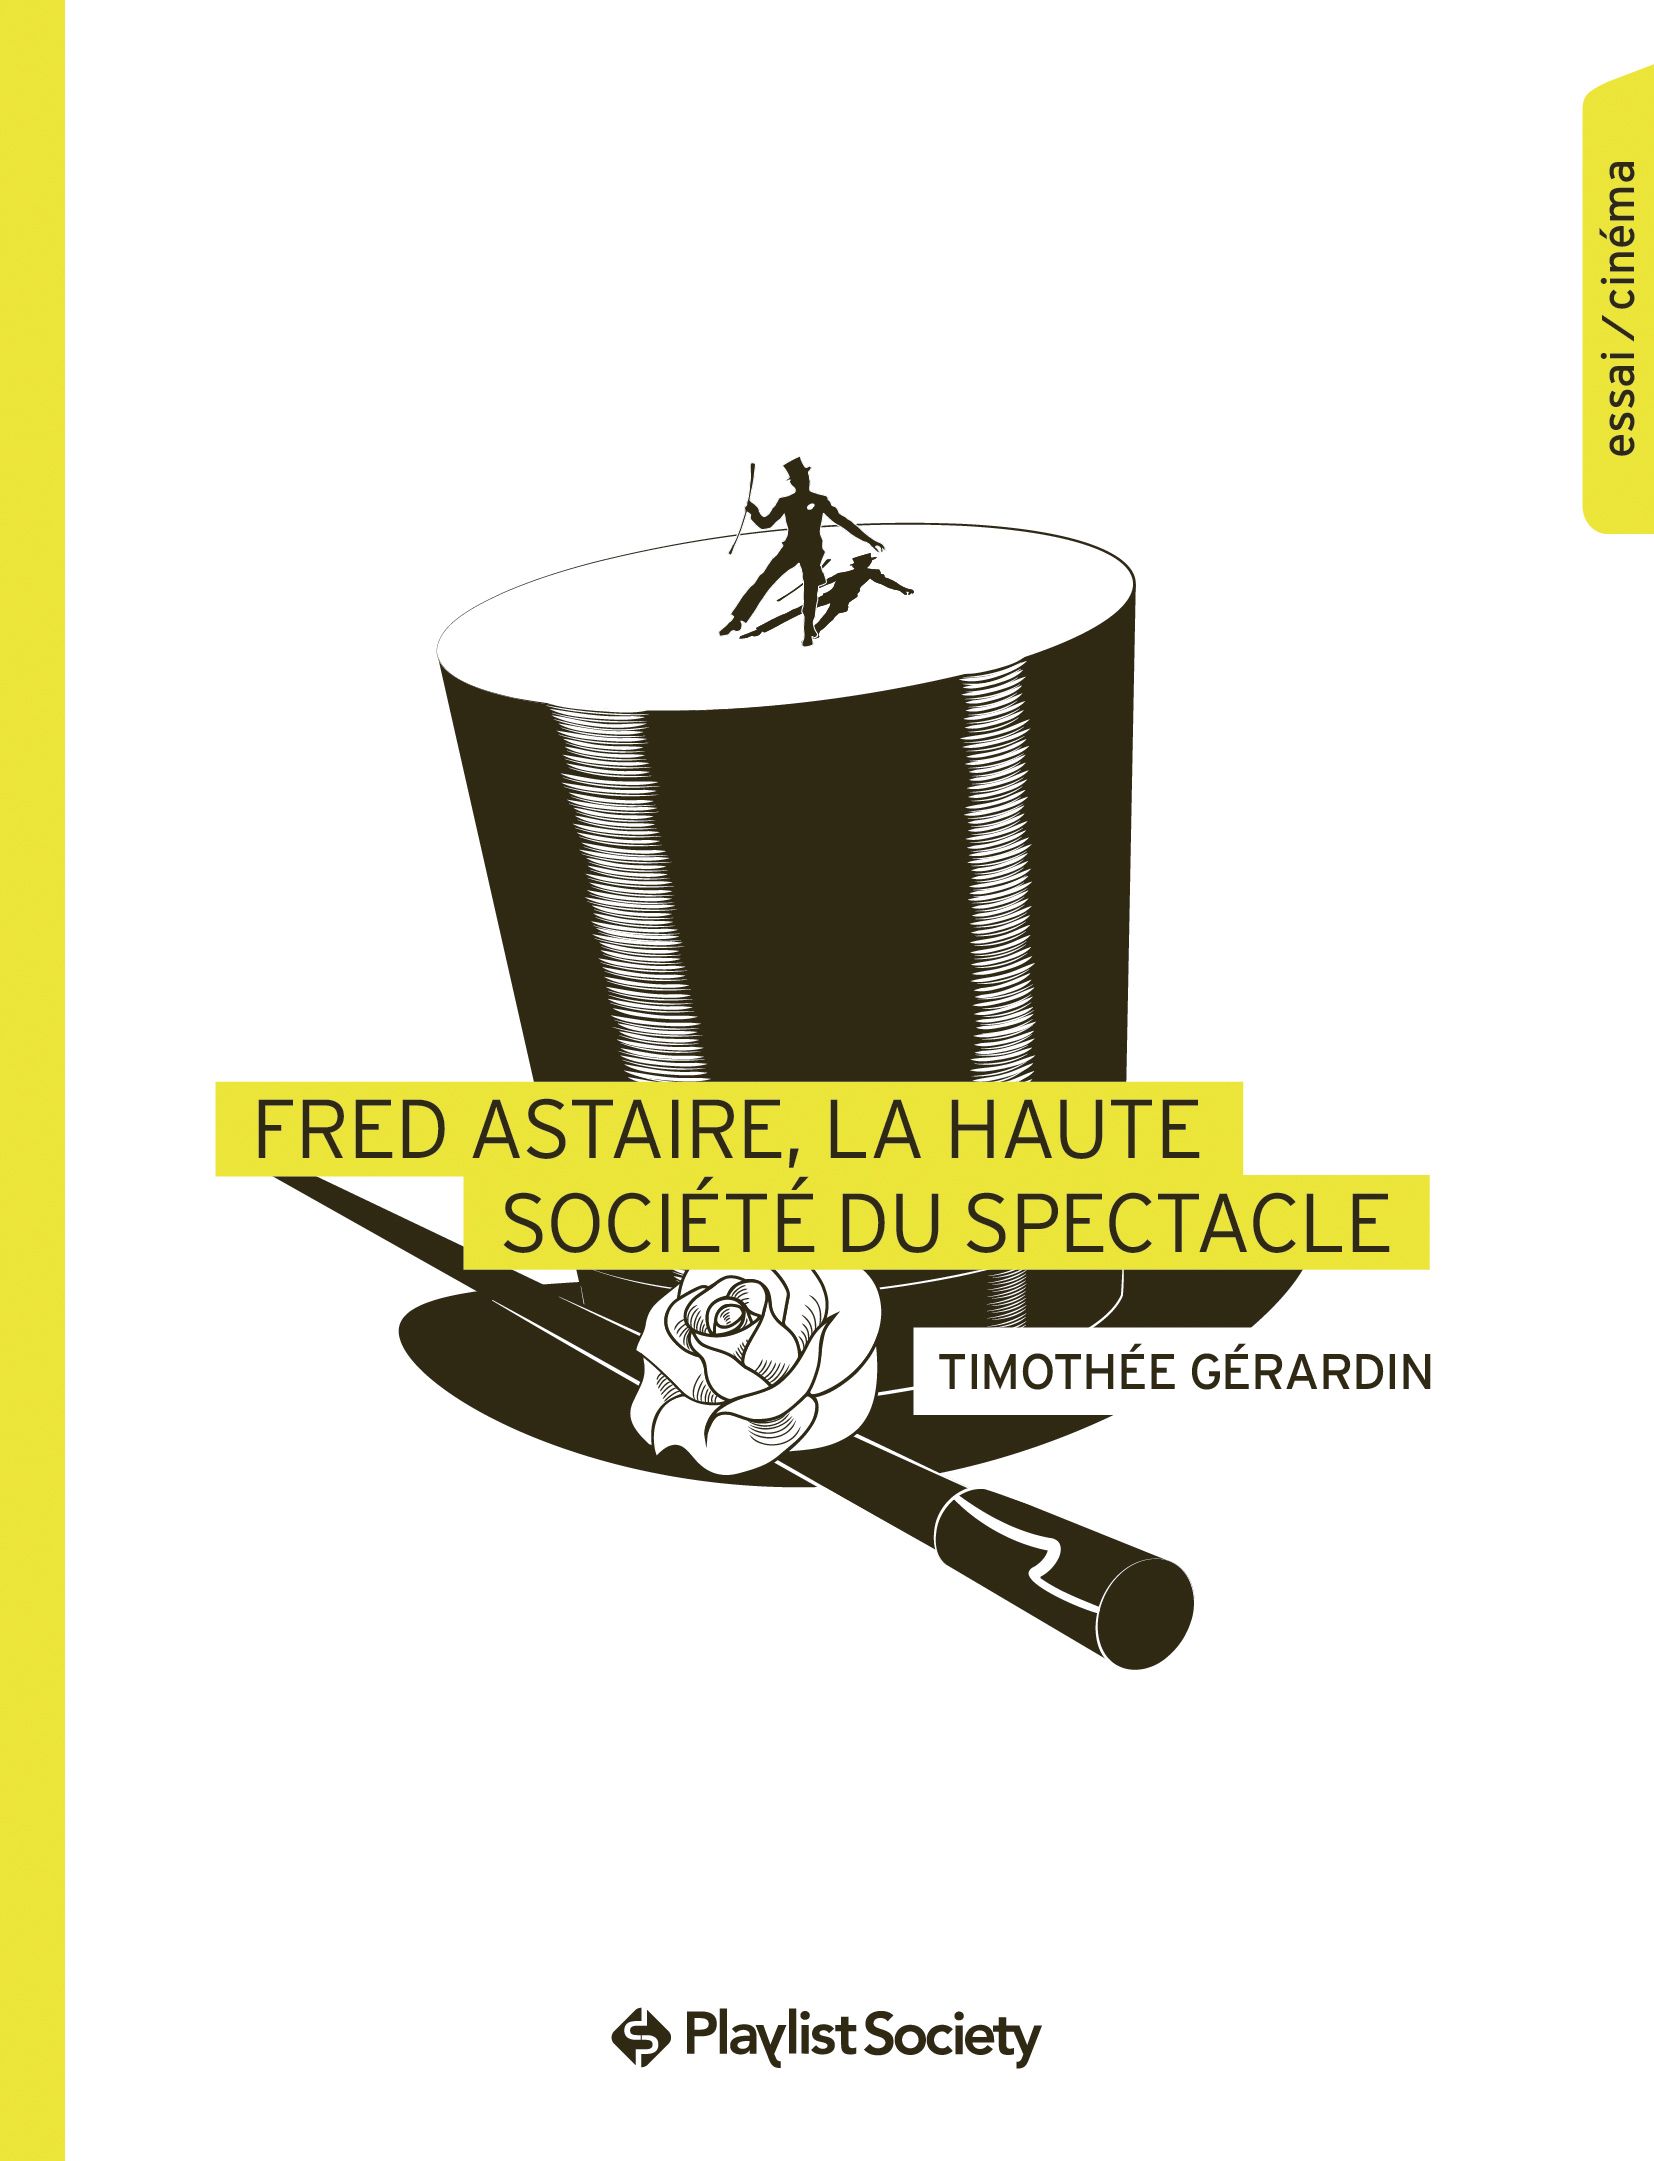 Fred Astaire, la haute société du spectacle, Timothée Gérardin